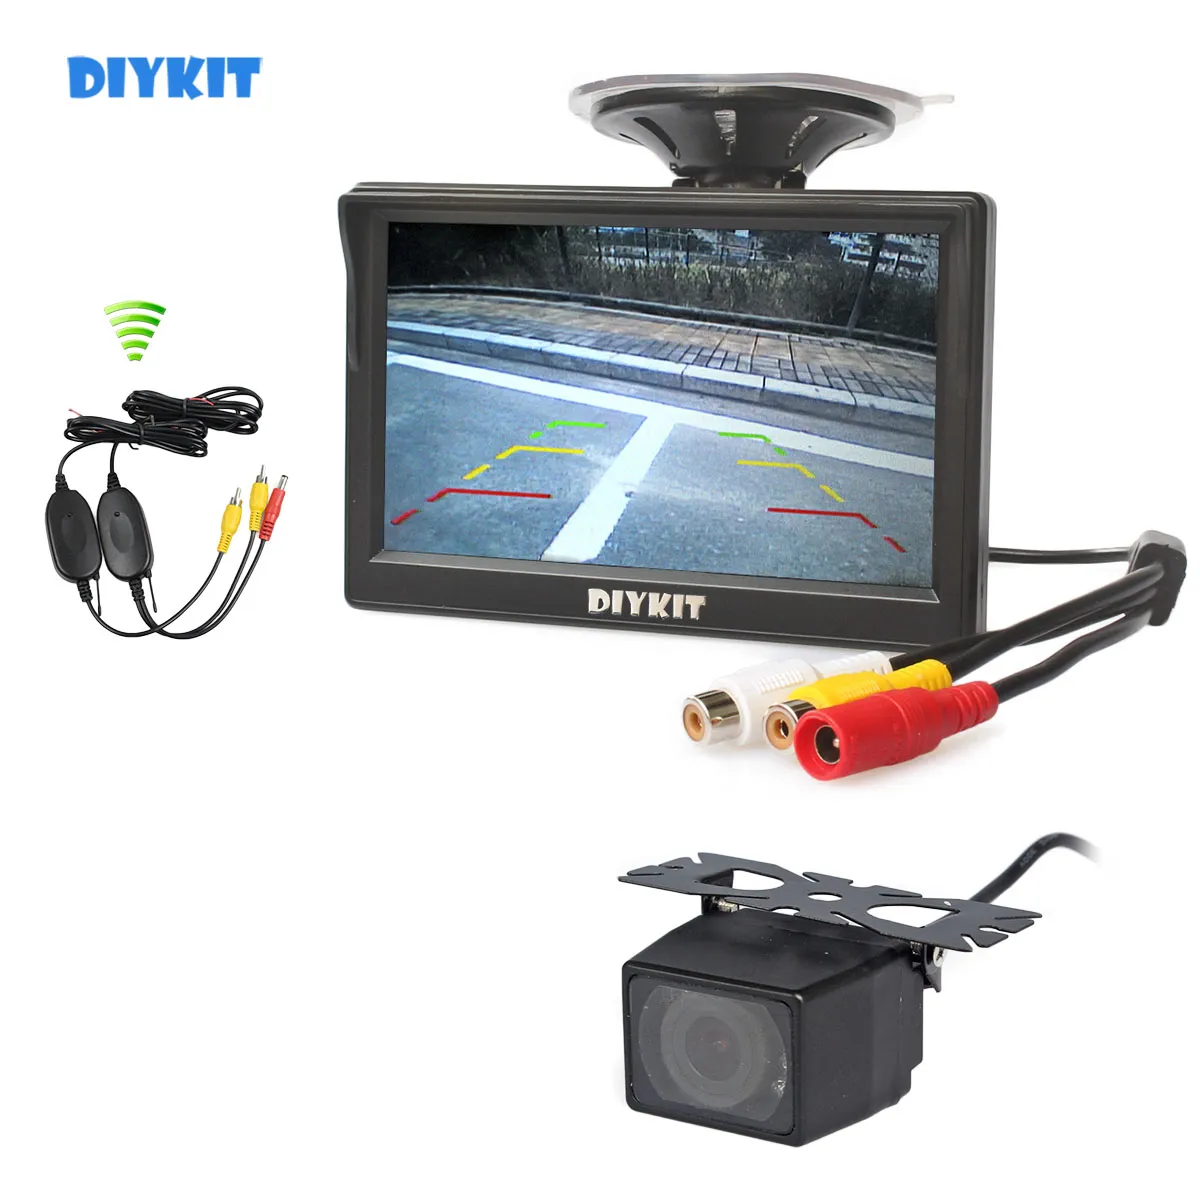 DIYKIT 무선 5 인치 LCD 디스플레이 자동차 모니터 뒷면 모니터 IR 나이트 비전 자동차 카메라 주차 시스템 키트